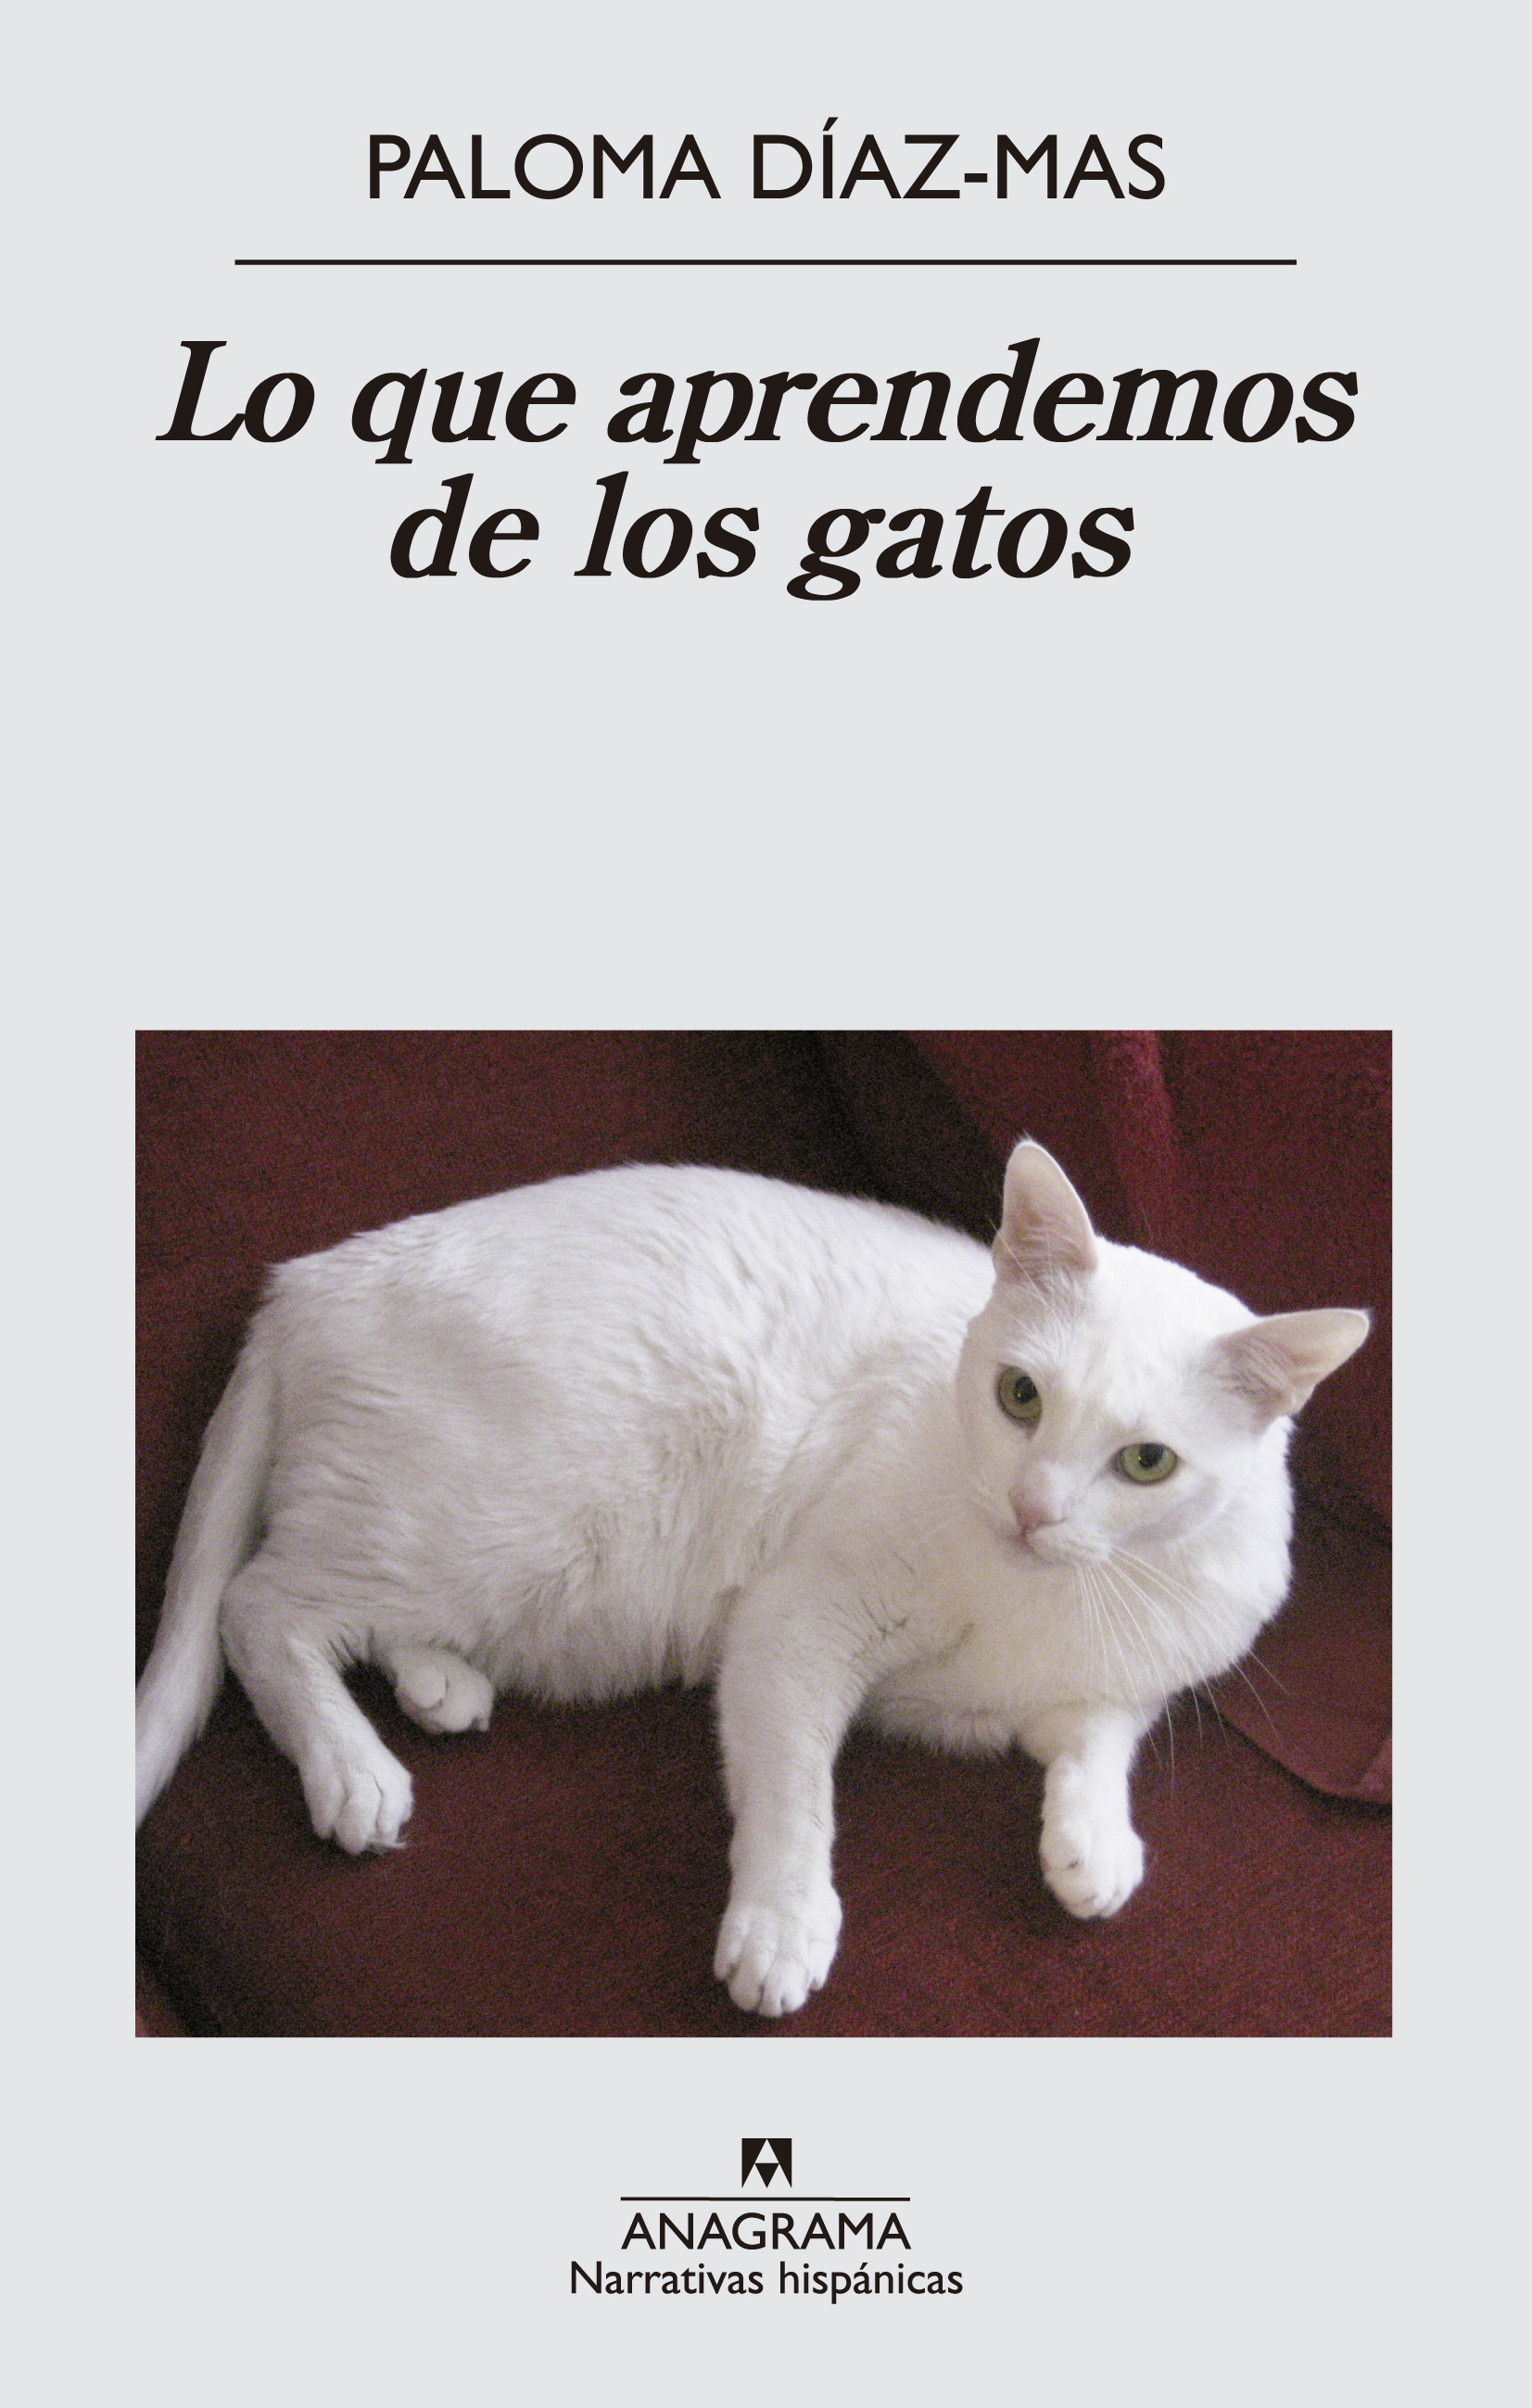 Lo que aprendemos los gatos Díaz-Mas, - 978-84-339-9780-7 - Editorial Anagrama